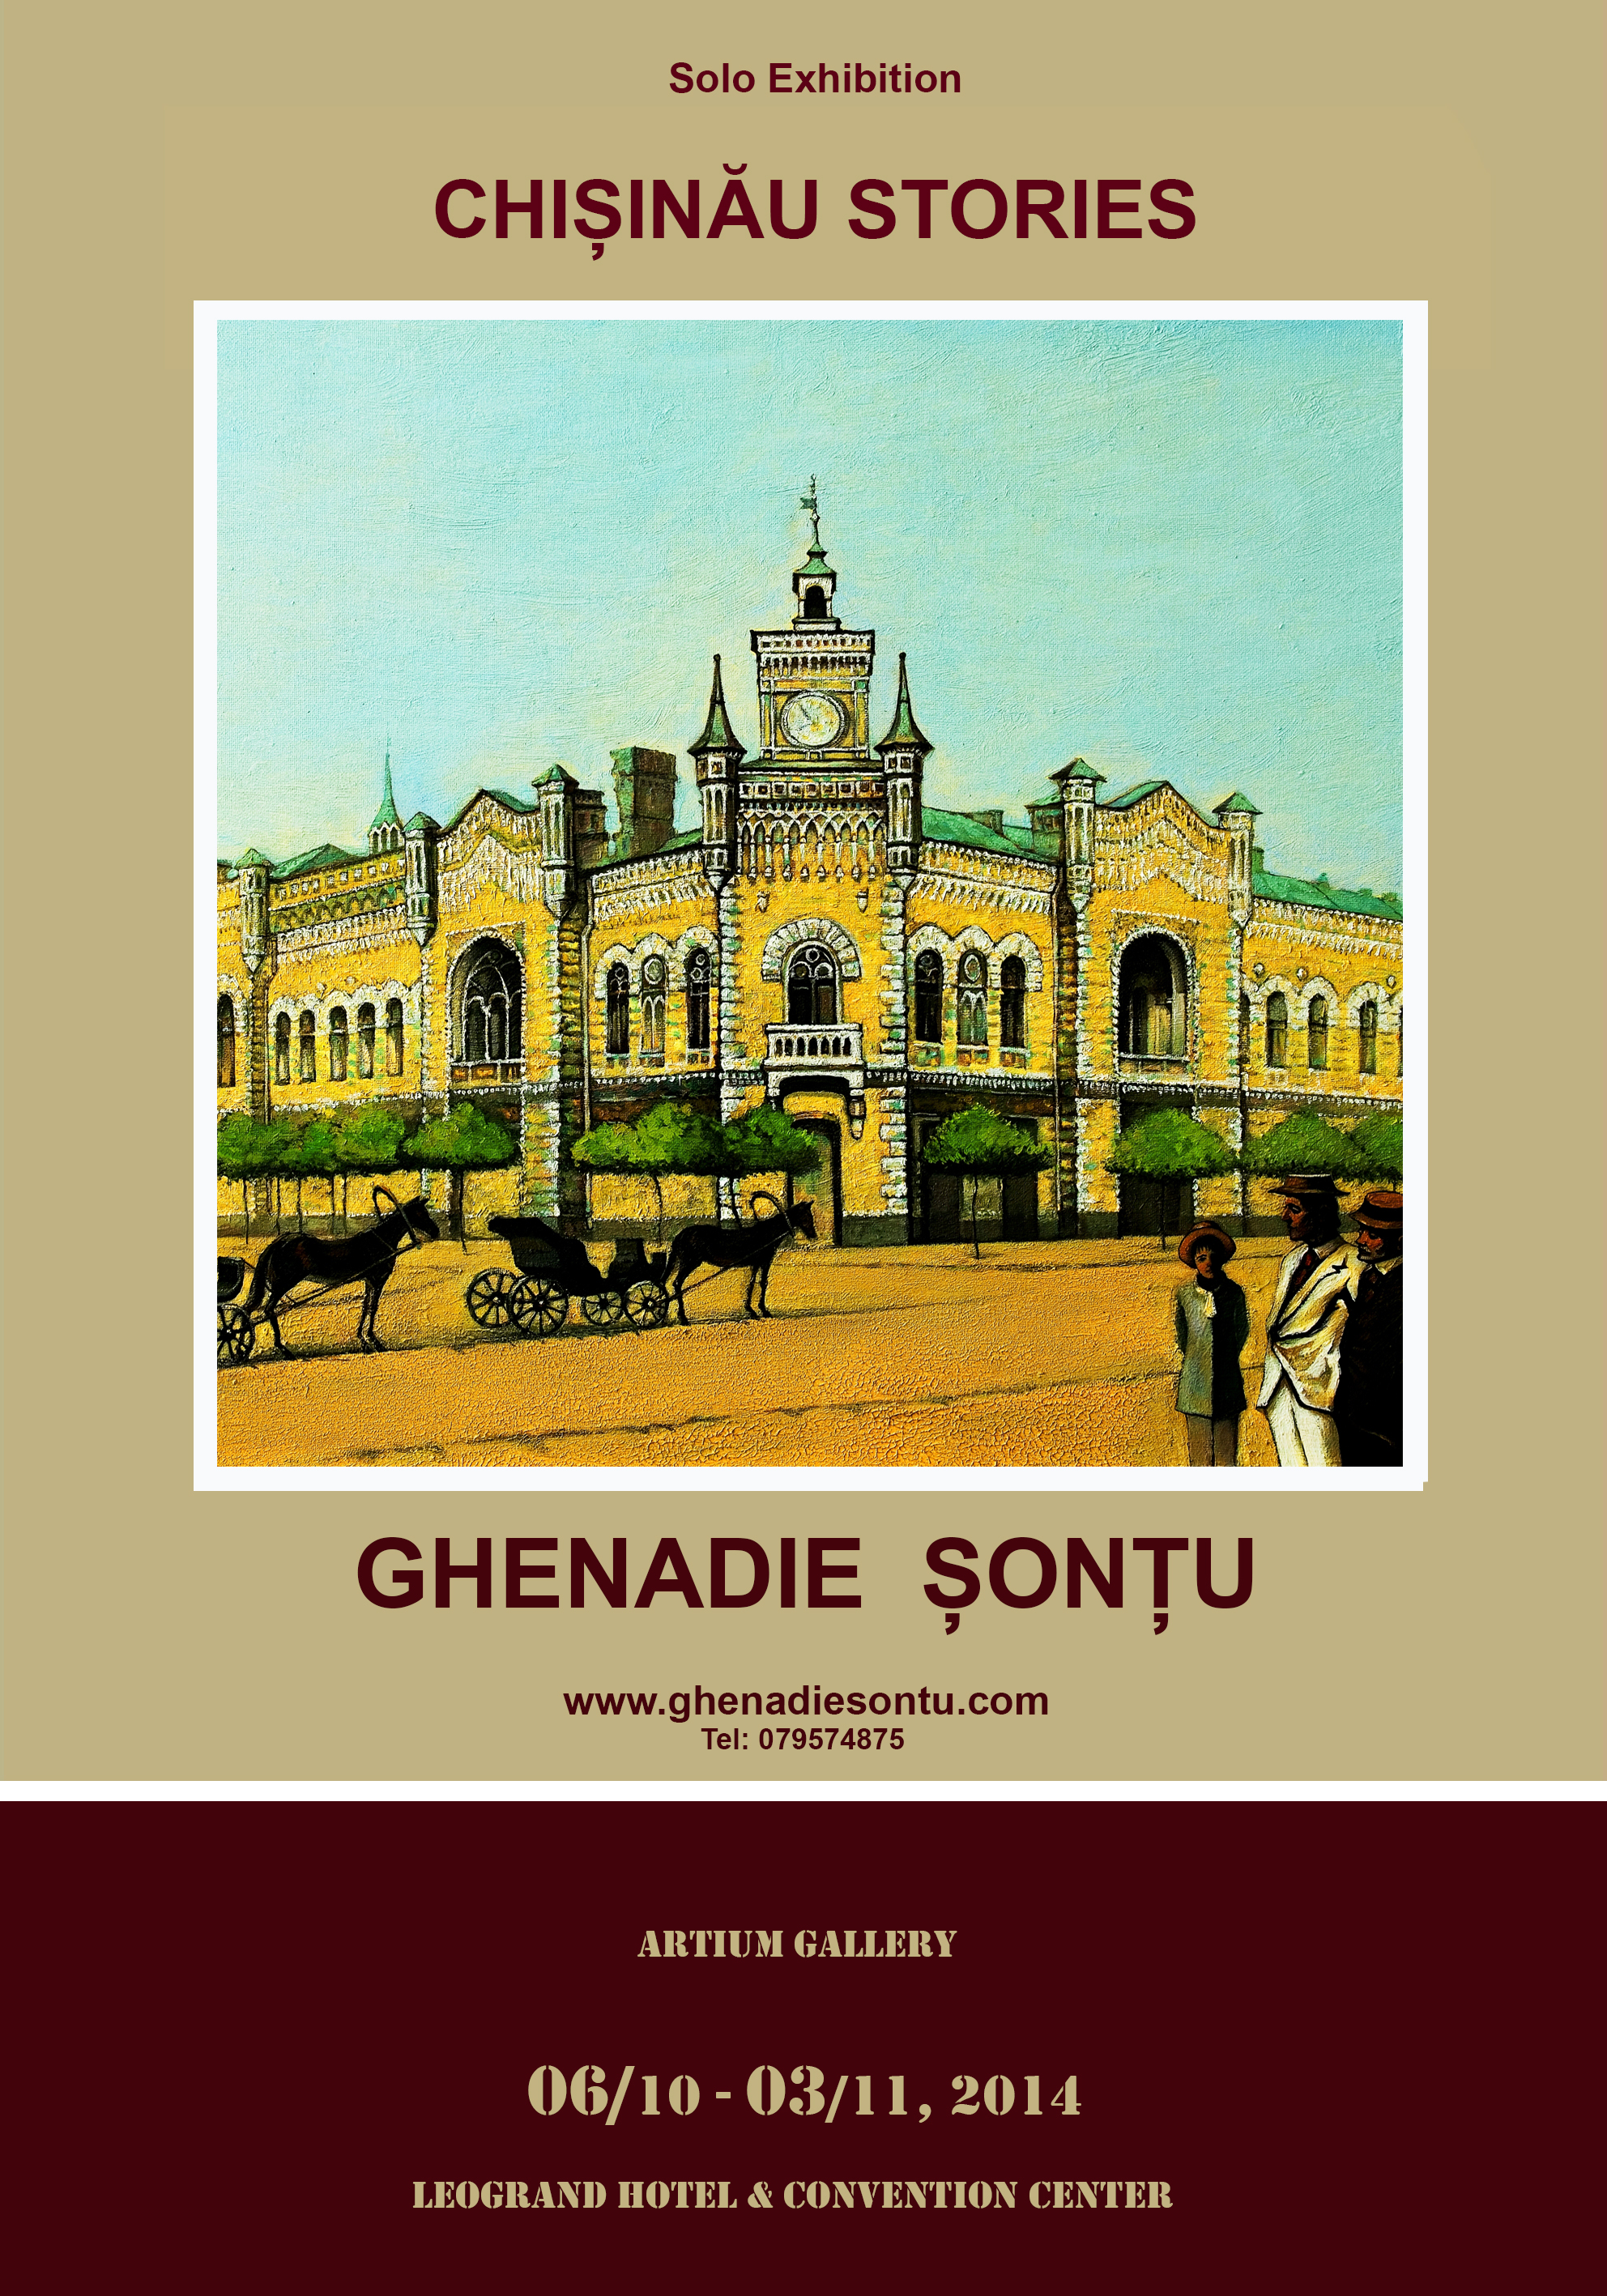 CHISINAU STORIES - Ghenadie Sontu Solo Exhibition at Artium Gallery Leogrand Convention Center Chisinau Moldova .jpg